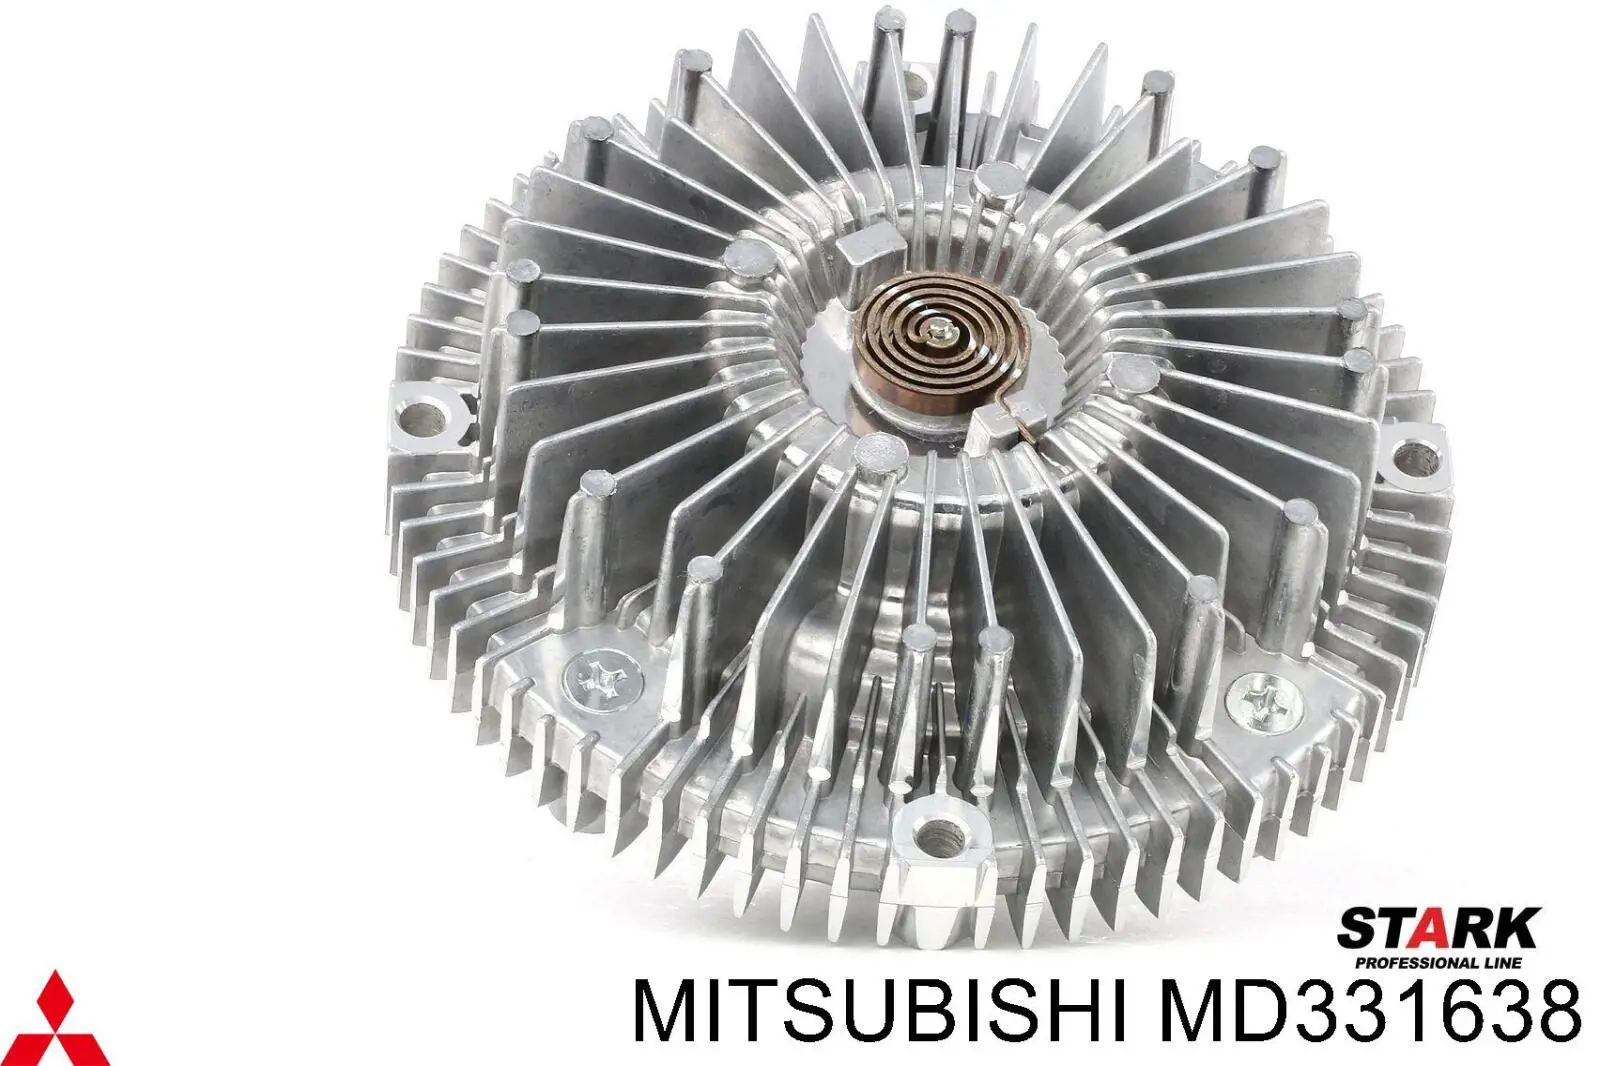 MD331638 Mitsubishi embrague, ventilador del radiador